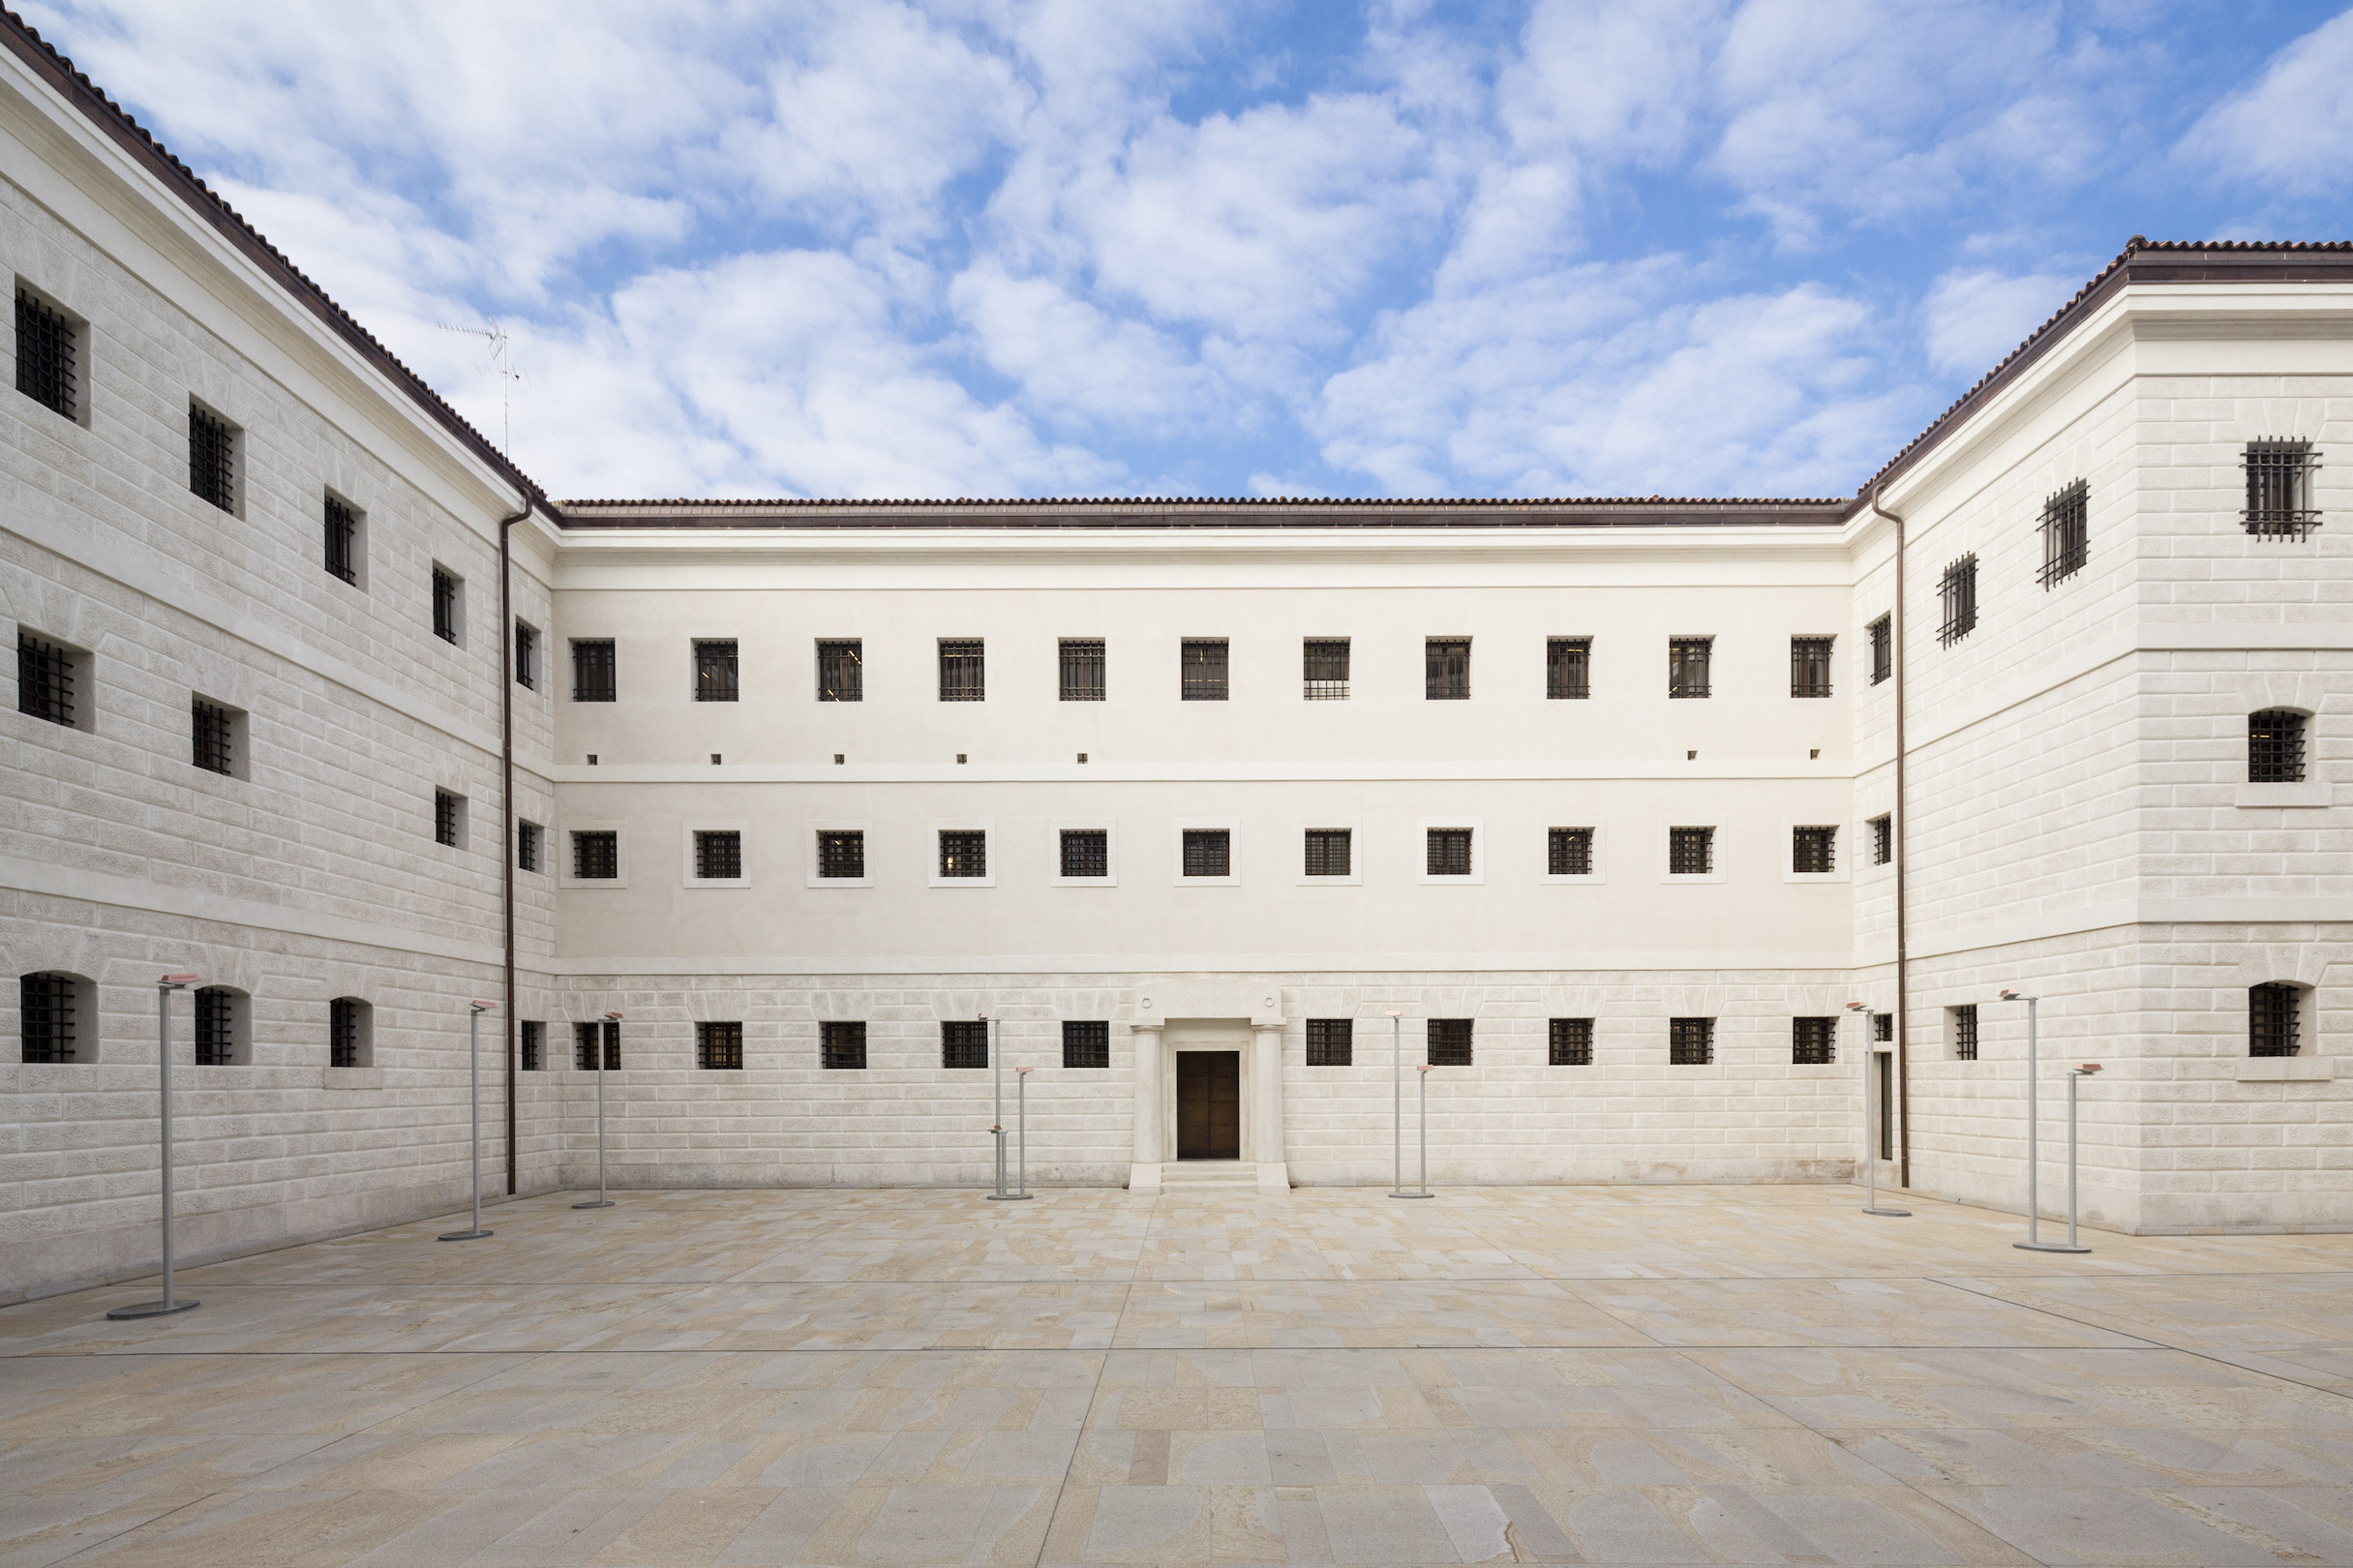 Gallerie delle Prigioni, the exhibition venue of Fondazione Imago Mundi in Treviso